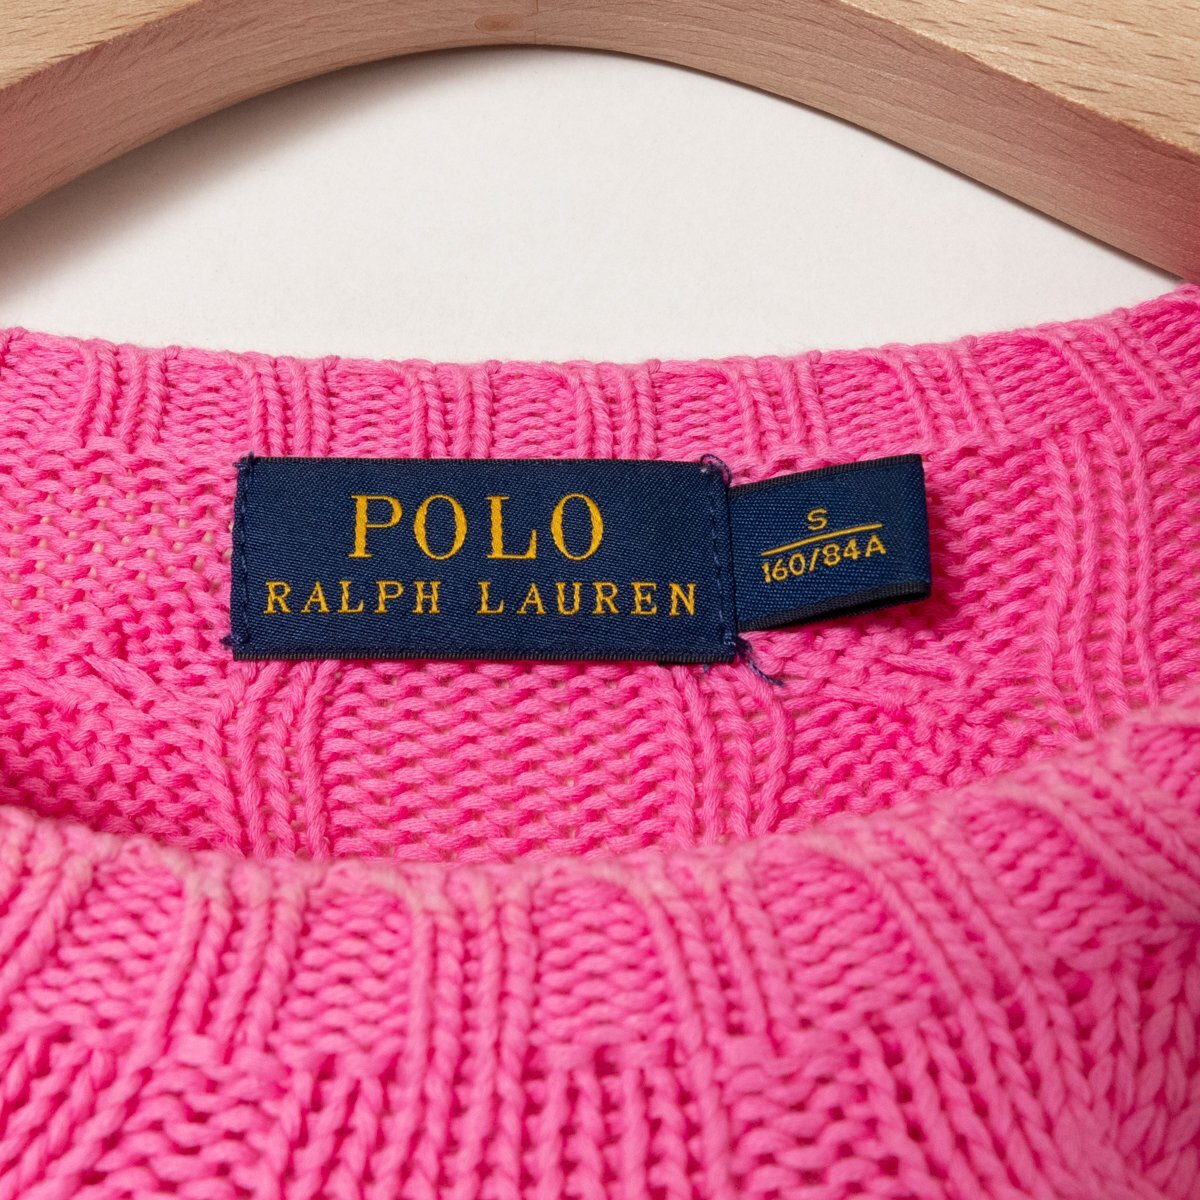 POLO RALPH LAUREN ポロ ラルフローレン キッズ ケーブルニット セーター ロゴ刺繍 長袖 Sサイズ 綿100% コットン ピンク アメカジ 子供服の画像2